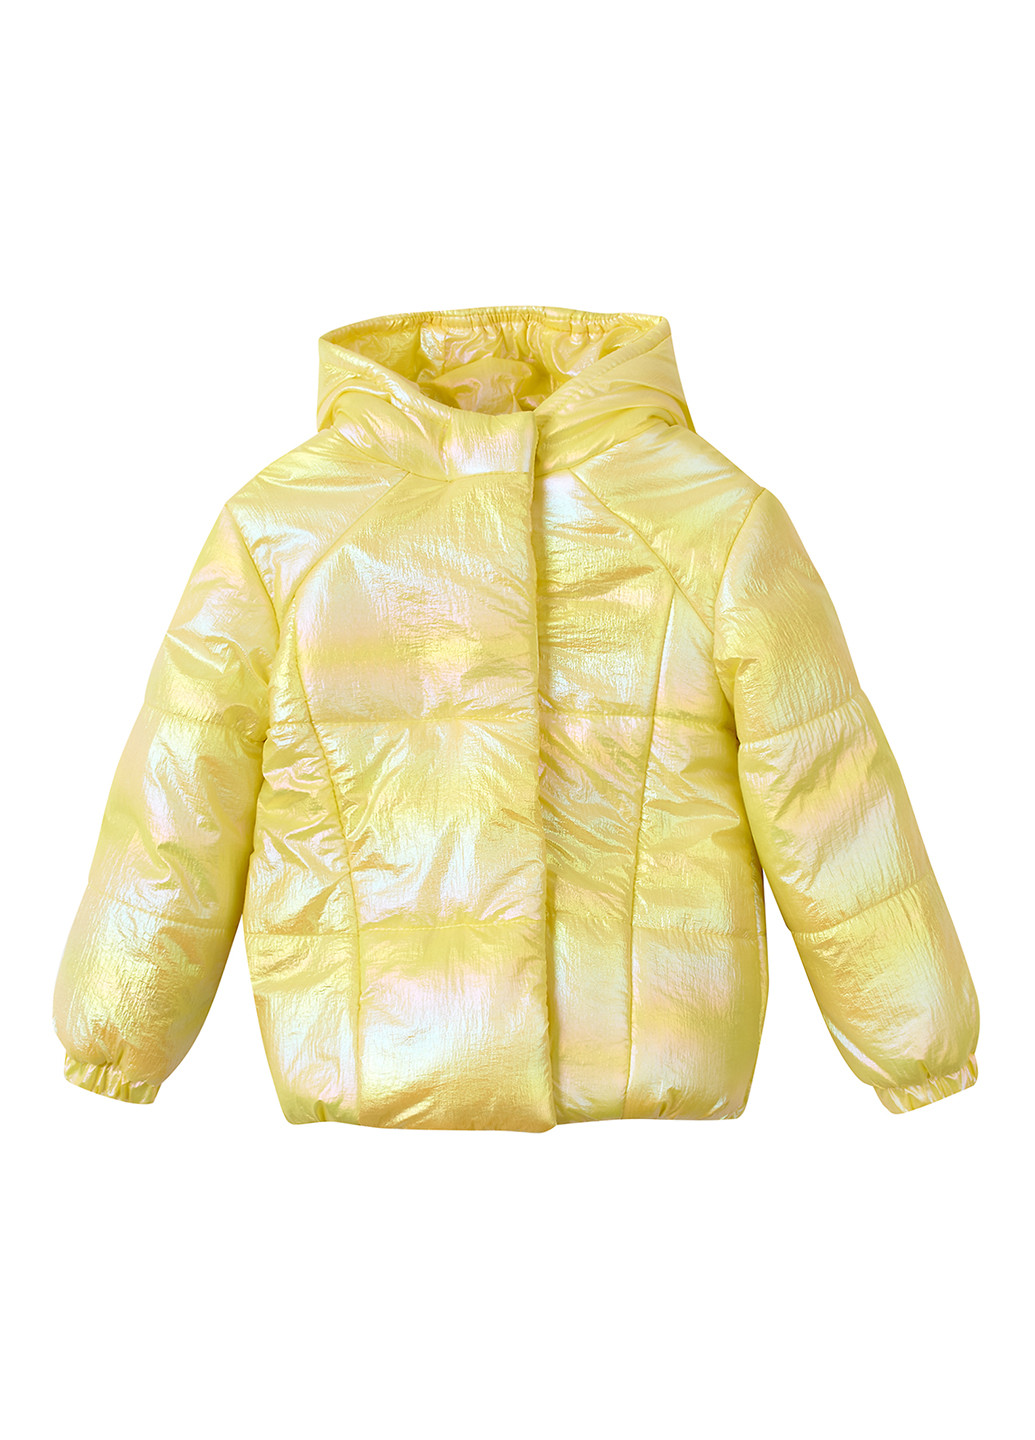 Жовта демісезонна куртка Одягайко